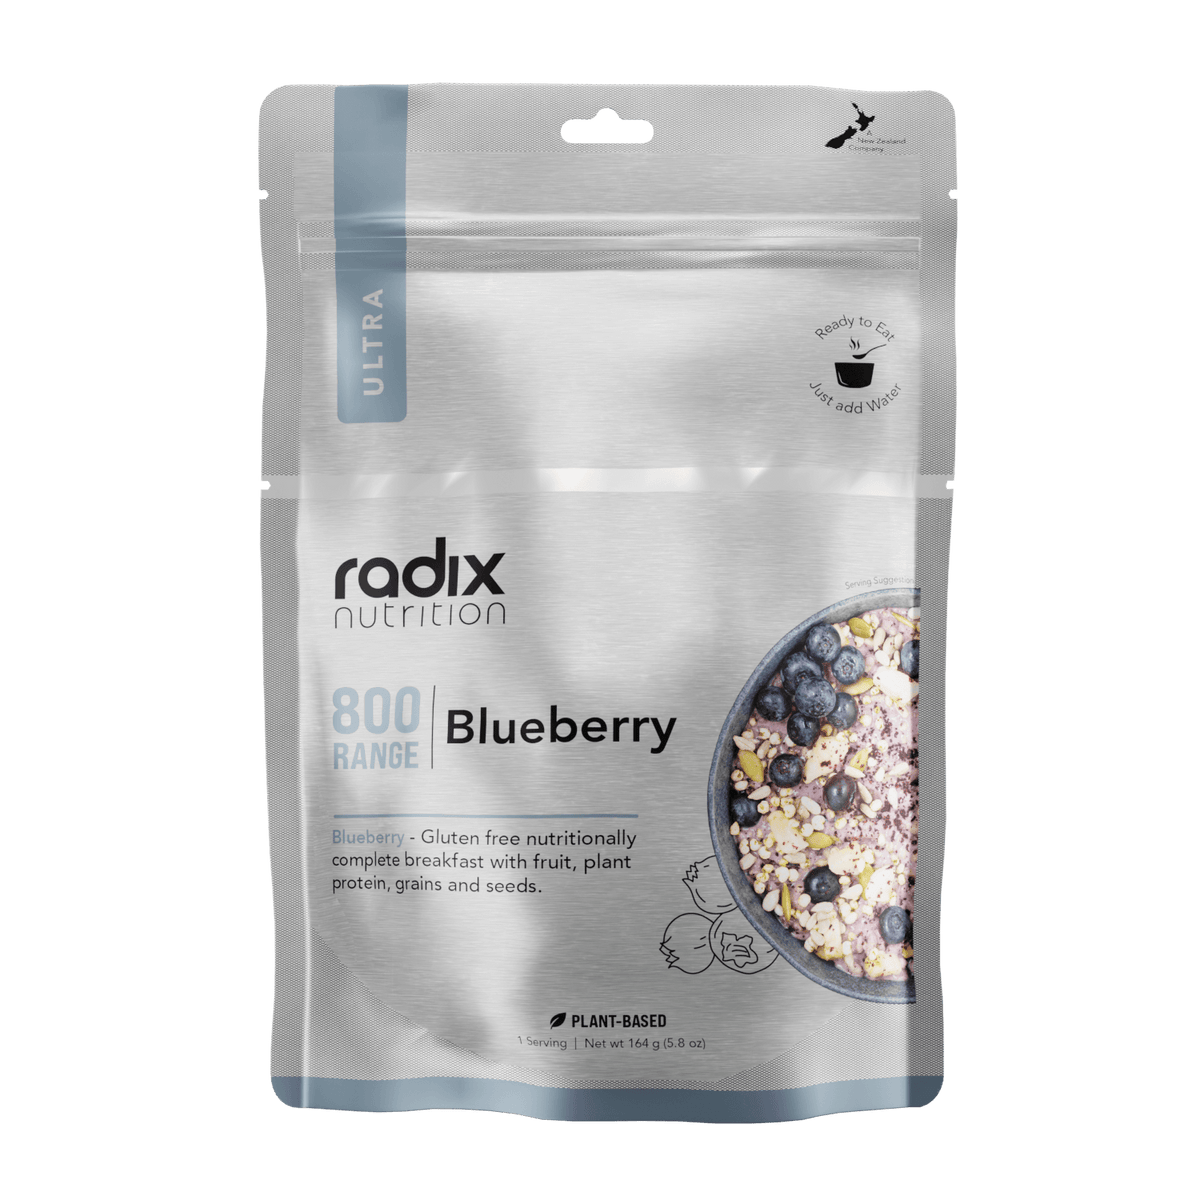 Ultra Breakfast - Blueberry